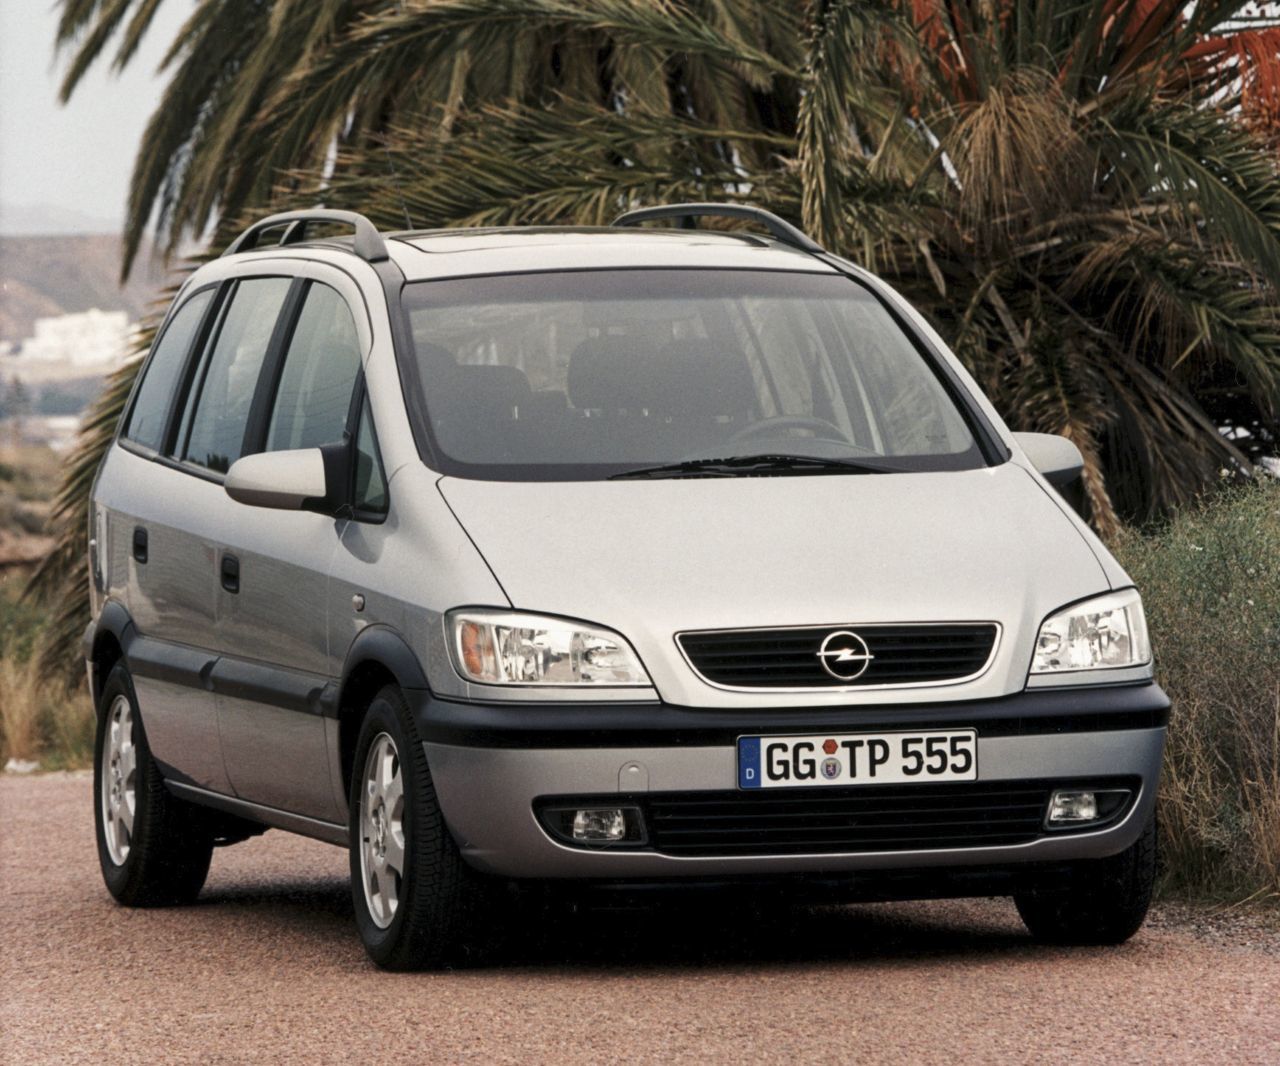 1999 – Opel Zafira A:  Wer hat’s erfunden? Opel! Den Kompakt-Van nämlich, der sich im Handumdrehen von einem Siebensitzer in einen Laster mit riesigem Kofferraum (mit bis zu 1.700 Liter Volumen) verwandelt – ohne dass ein Sitz ausgebaut werden muss. Die Formel dafür heißt Flex7 und bringt dem Opel Zafira das „Goldene Lenkrad 1999“. Dank des tollen Konzepts verschwinden die Sitze bei Bedarf einfach im Fahrzeugboden. Dazu überzeugt das Raumwunder mit kompakten Abmessungen und Fahrdynamik.